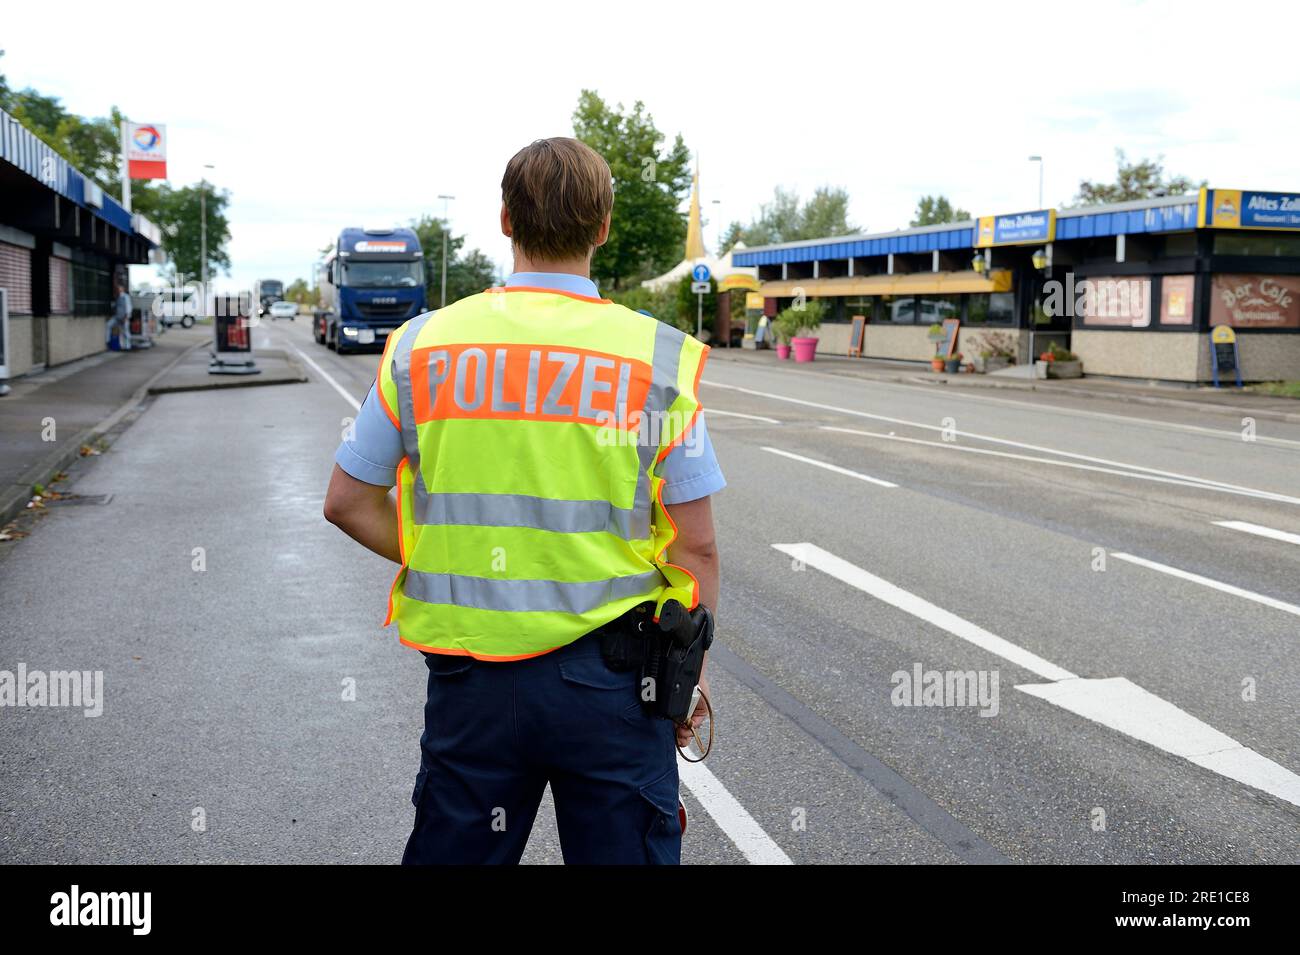 Polizeikontrolle durch deutsche Polizeibeamte an der französischen deutschen Grenze in Rheinau auf Fahrzeuge, die nach Deutschland einreisen. Polizeibeamter wurde von der Polizei gesehen Stockfoto